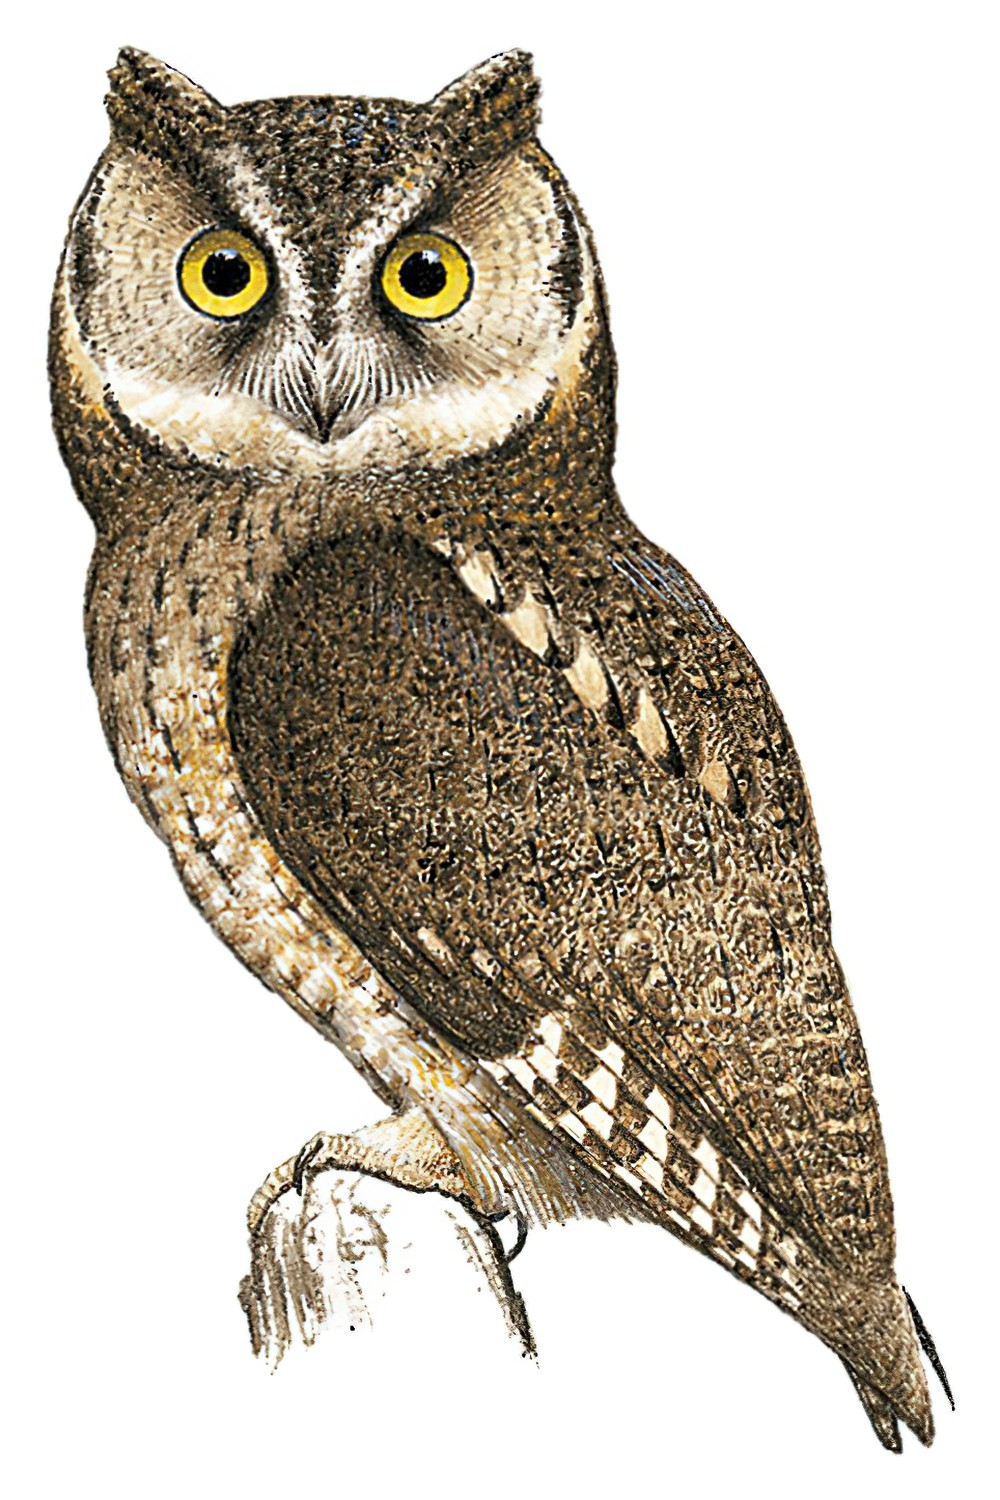 Sangihe Scops-Owl / Otus collari